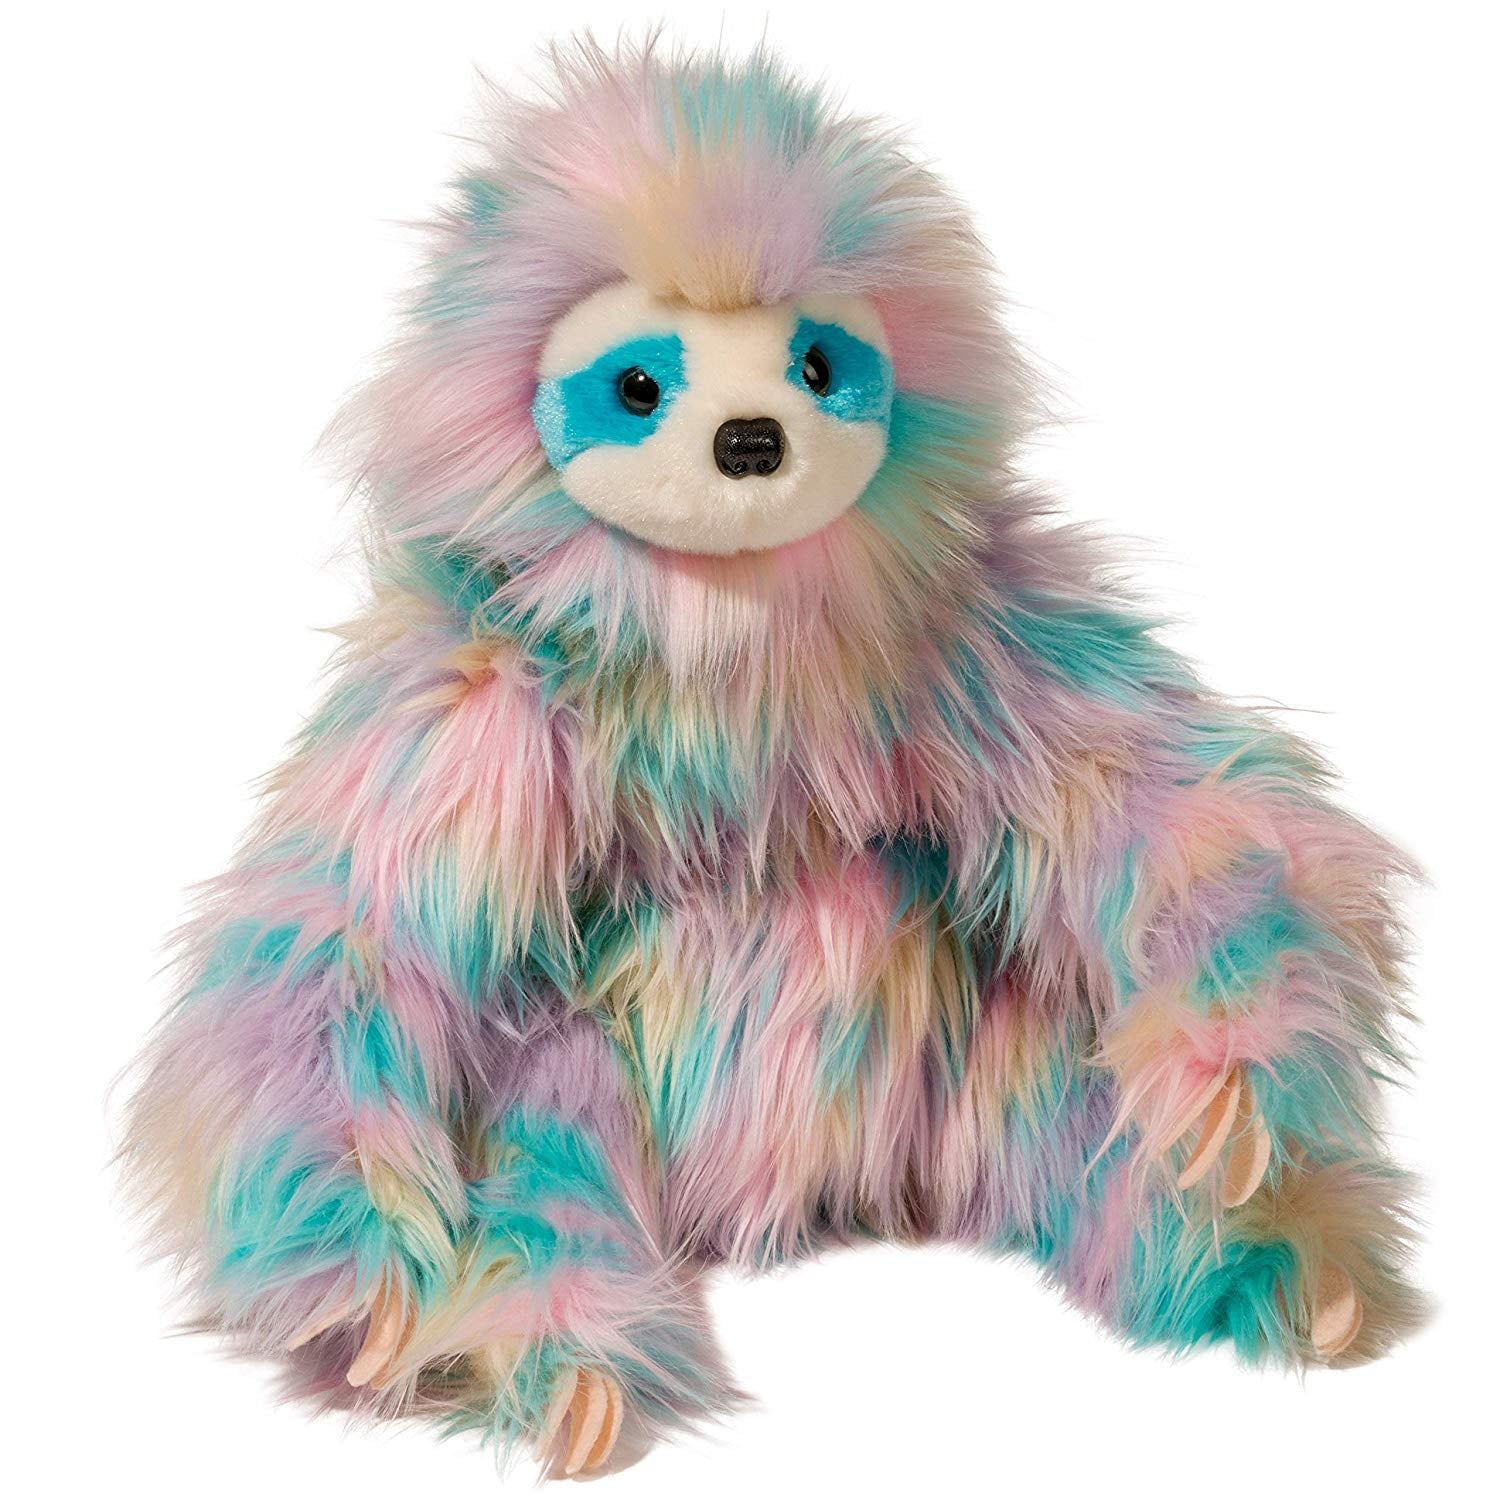 giant rainbow sloth stuffed animal walmart